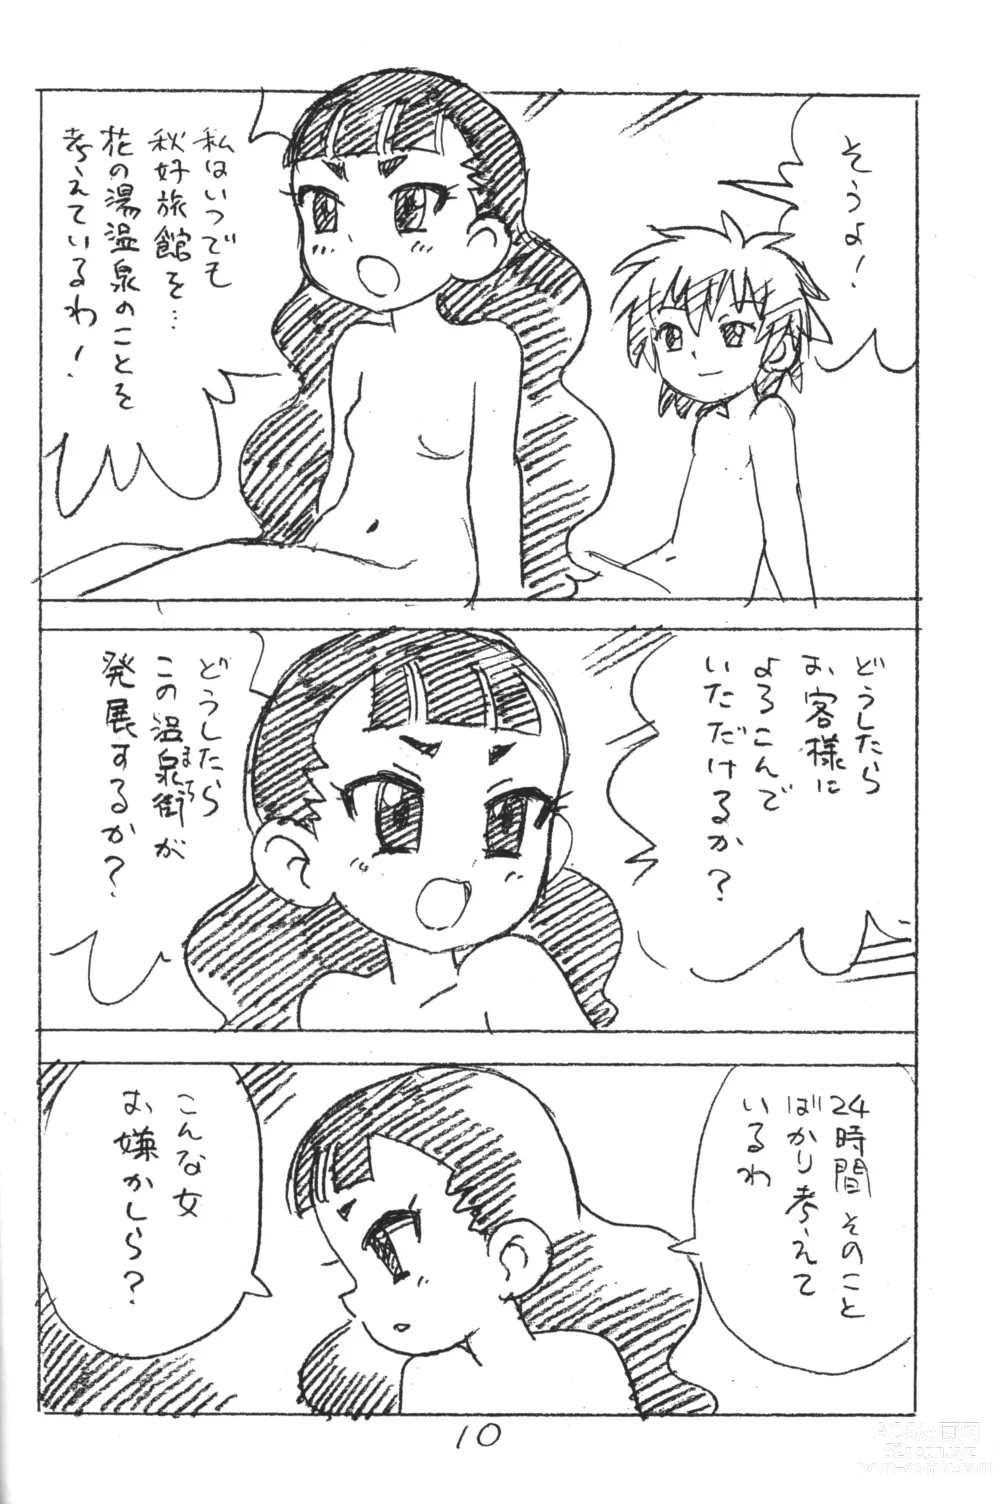 Page 9 of doujinshi Enpitsu Kaki Eromanga 2018 Fuyu